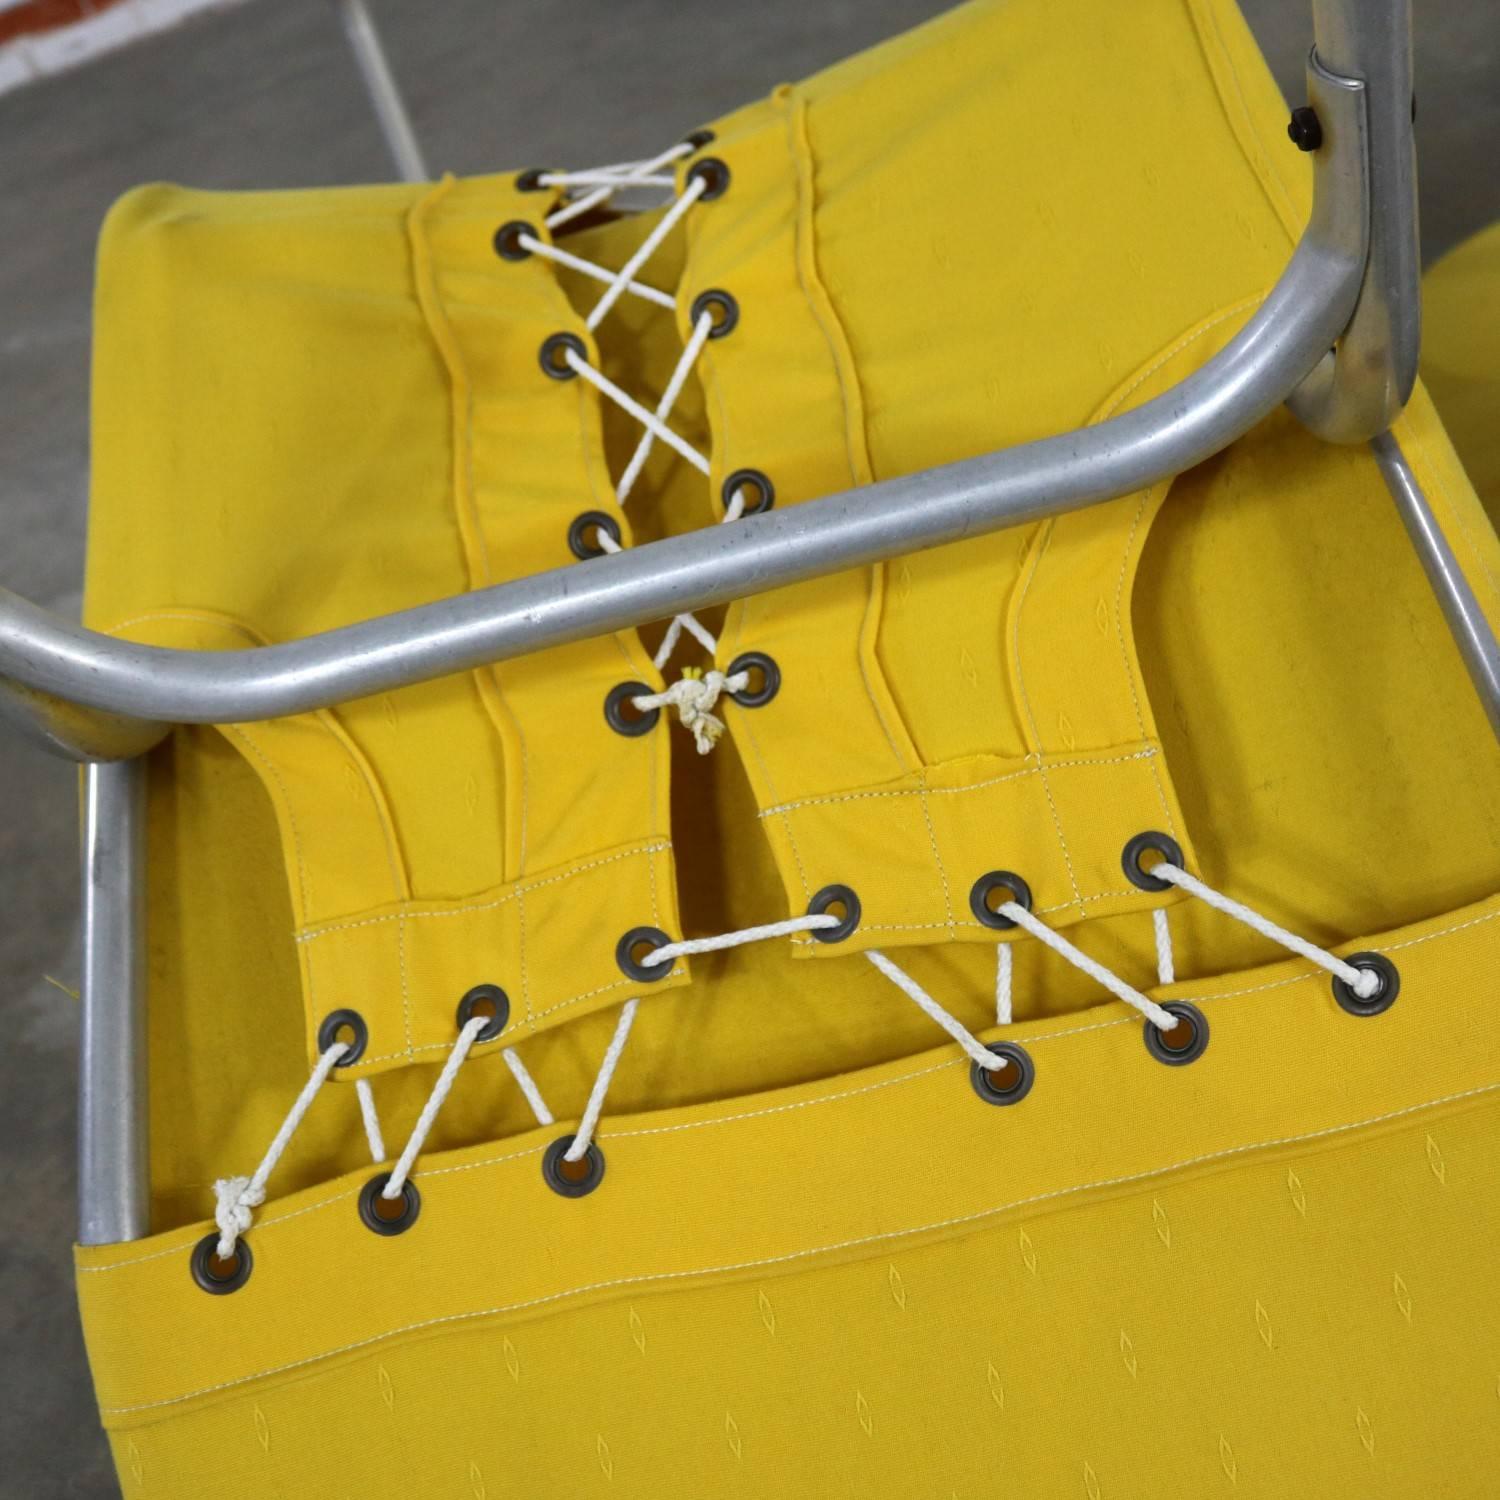 20th Century Pair of Bartolucci-Waldheim Barwa Lounge Chairs Aluminium and Yellow Canvas